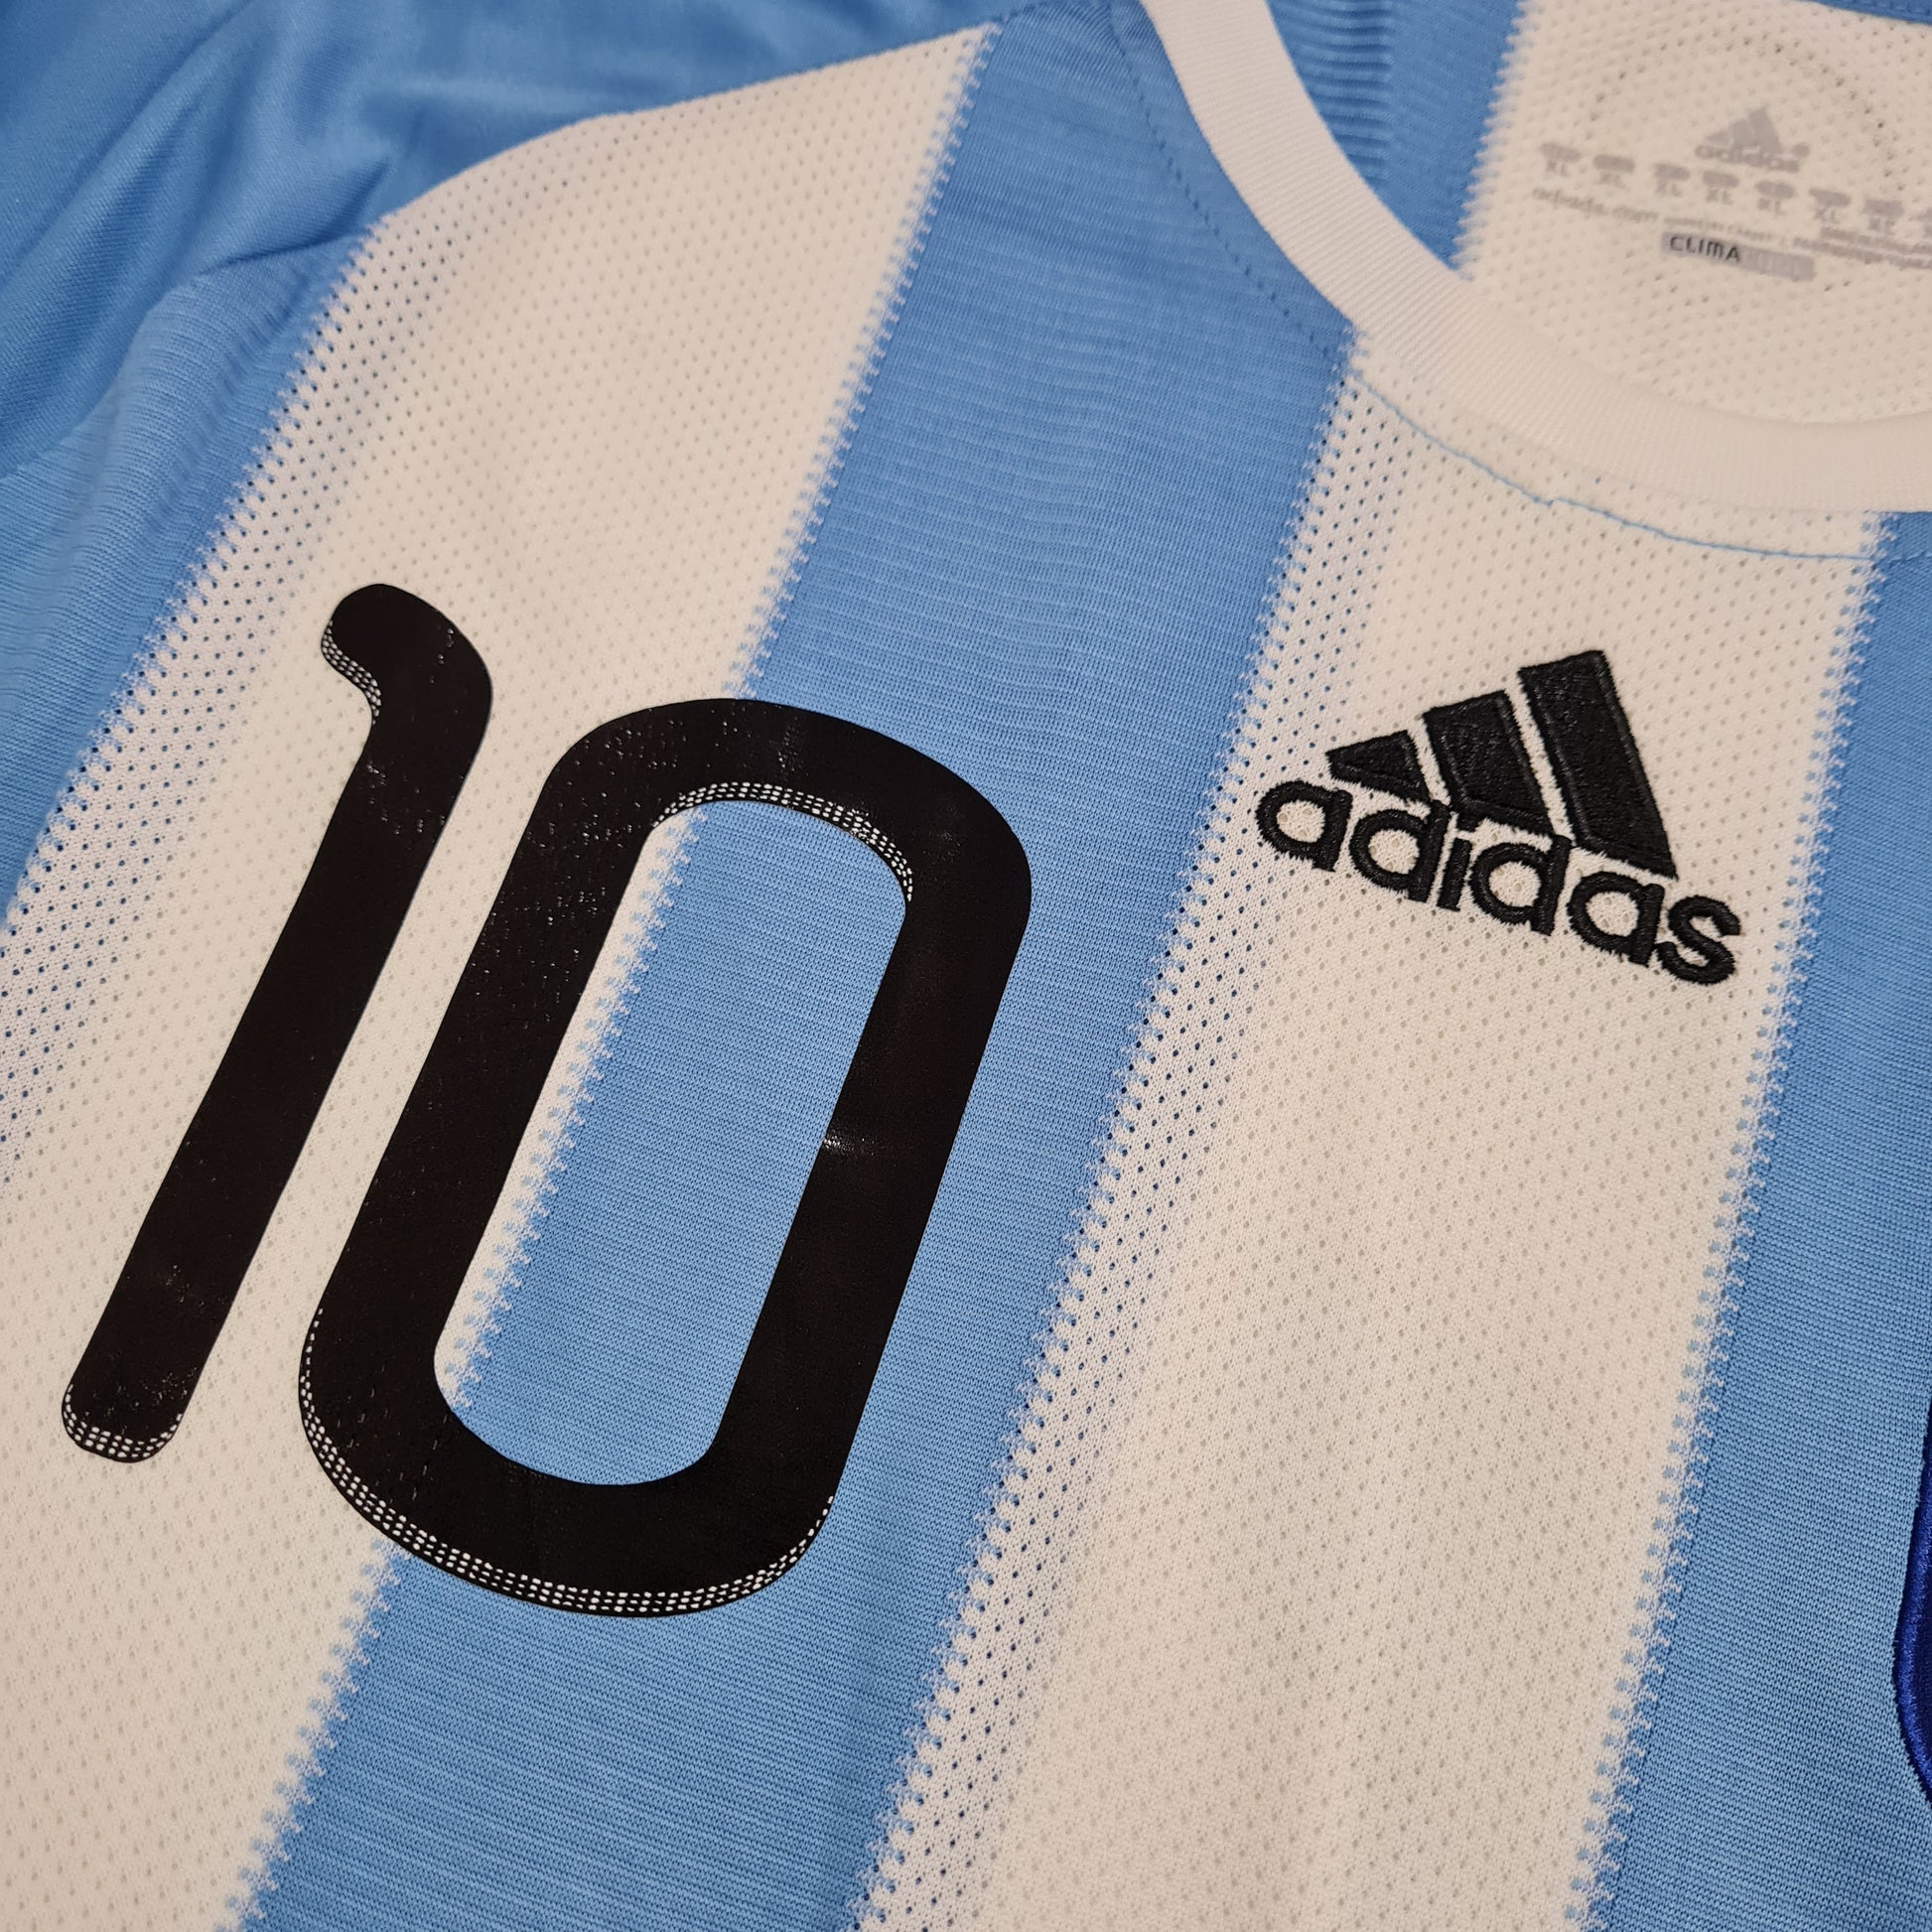 Argentina Titular 2010 - Thunder Internacional